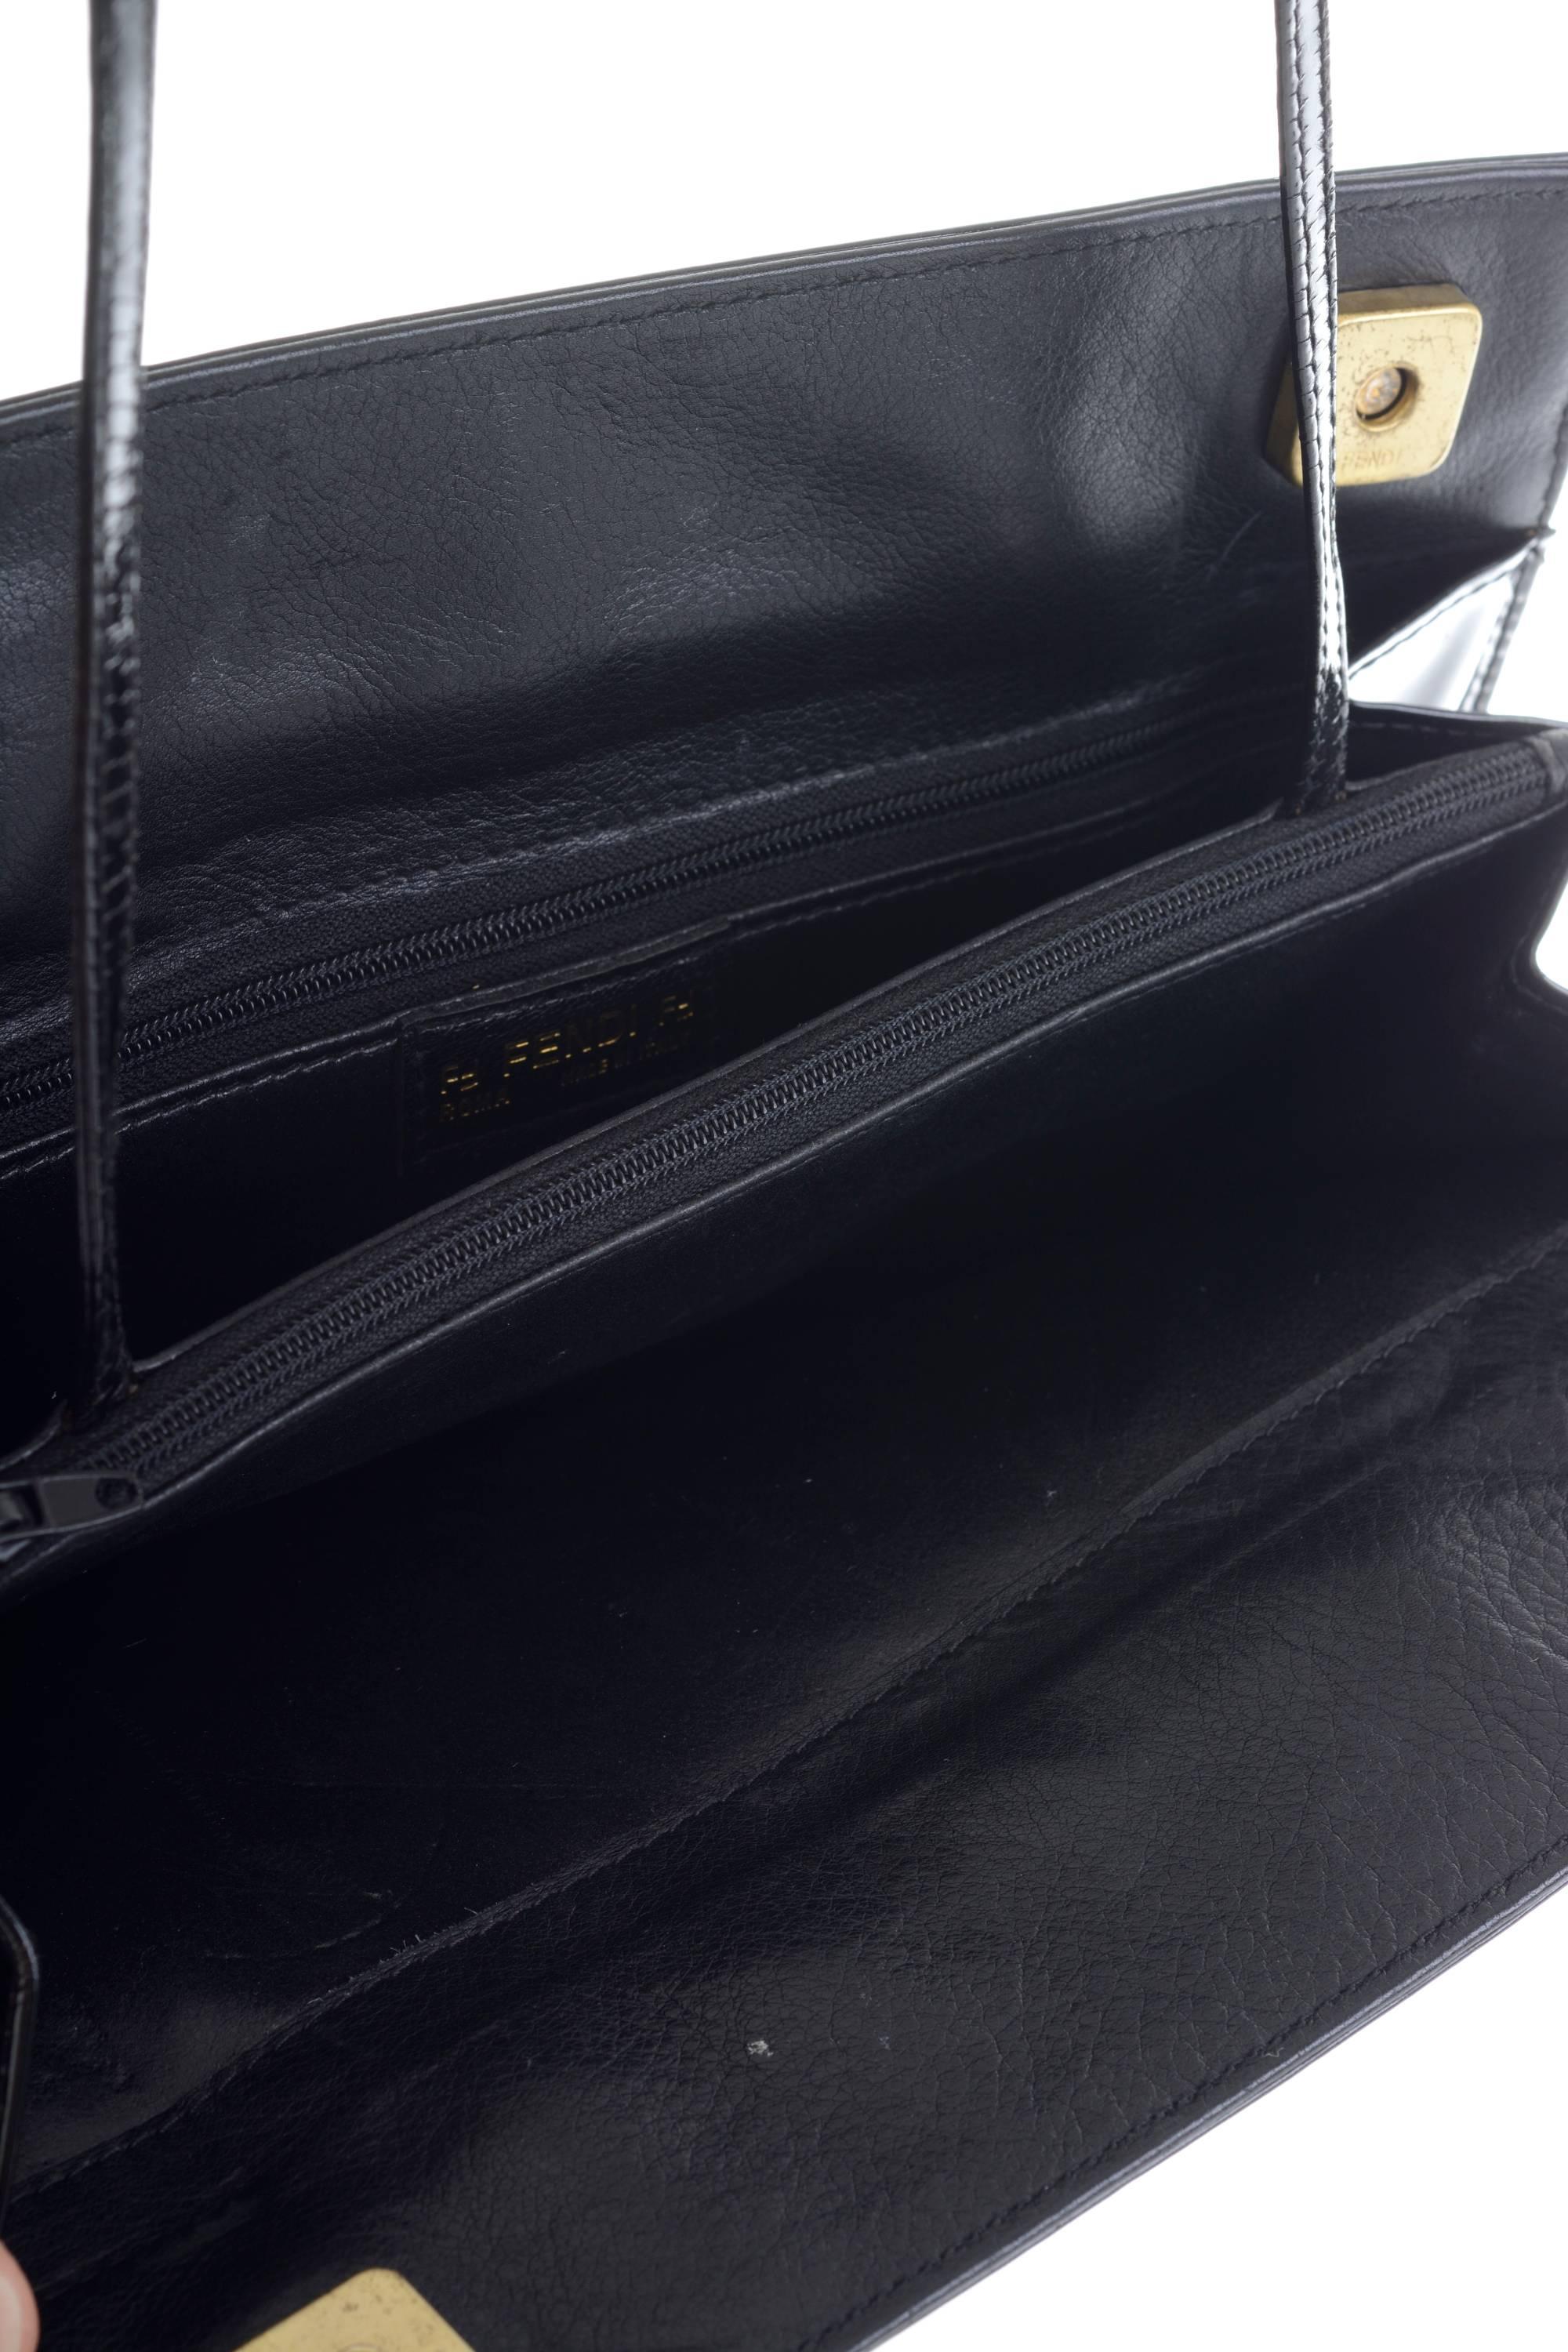 1980s FENDI Black Patent Leather Shoulder Bag 3